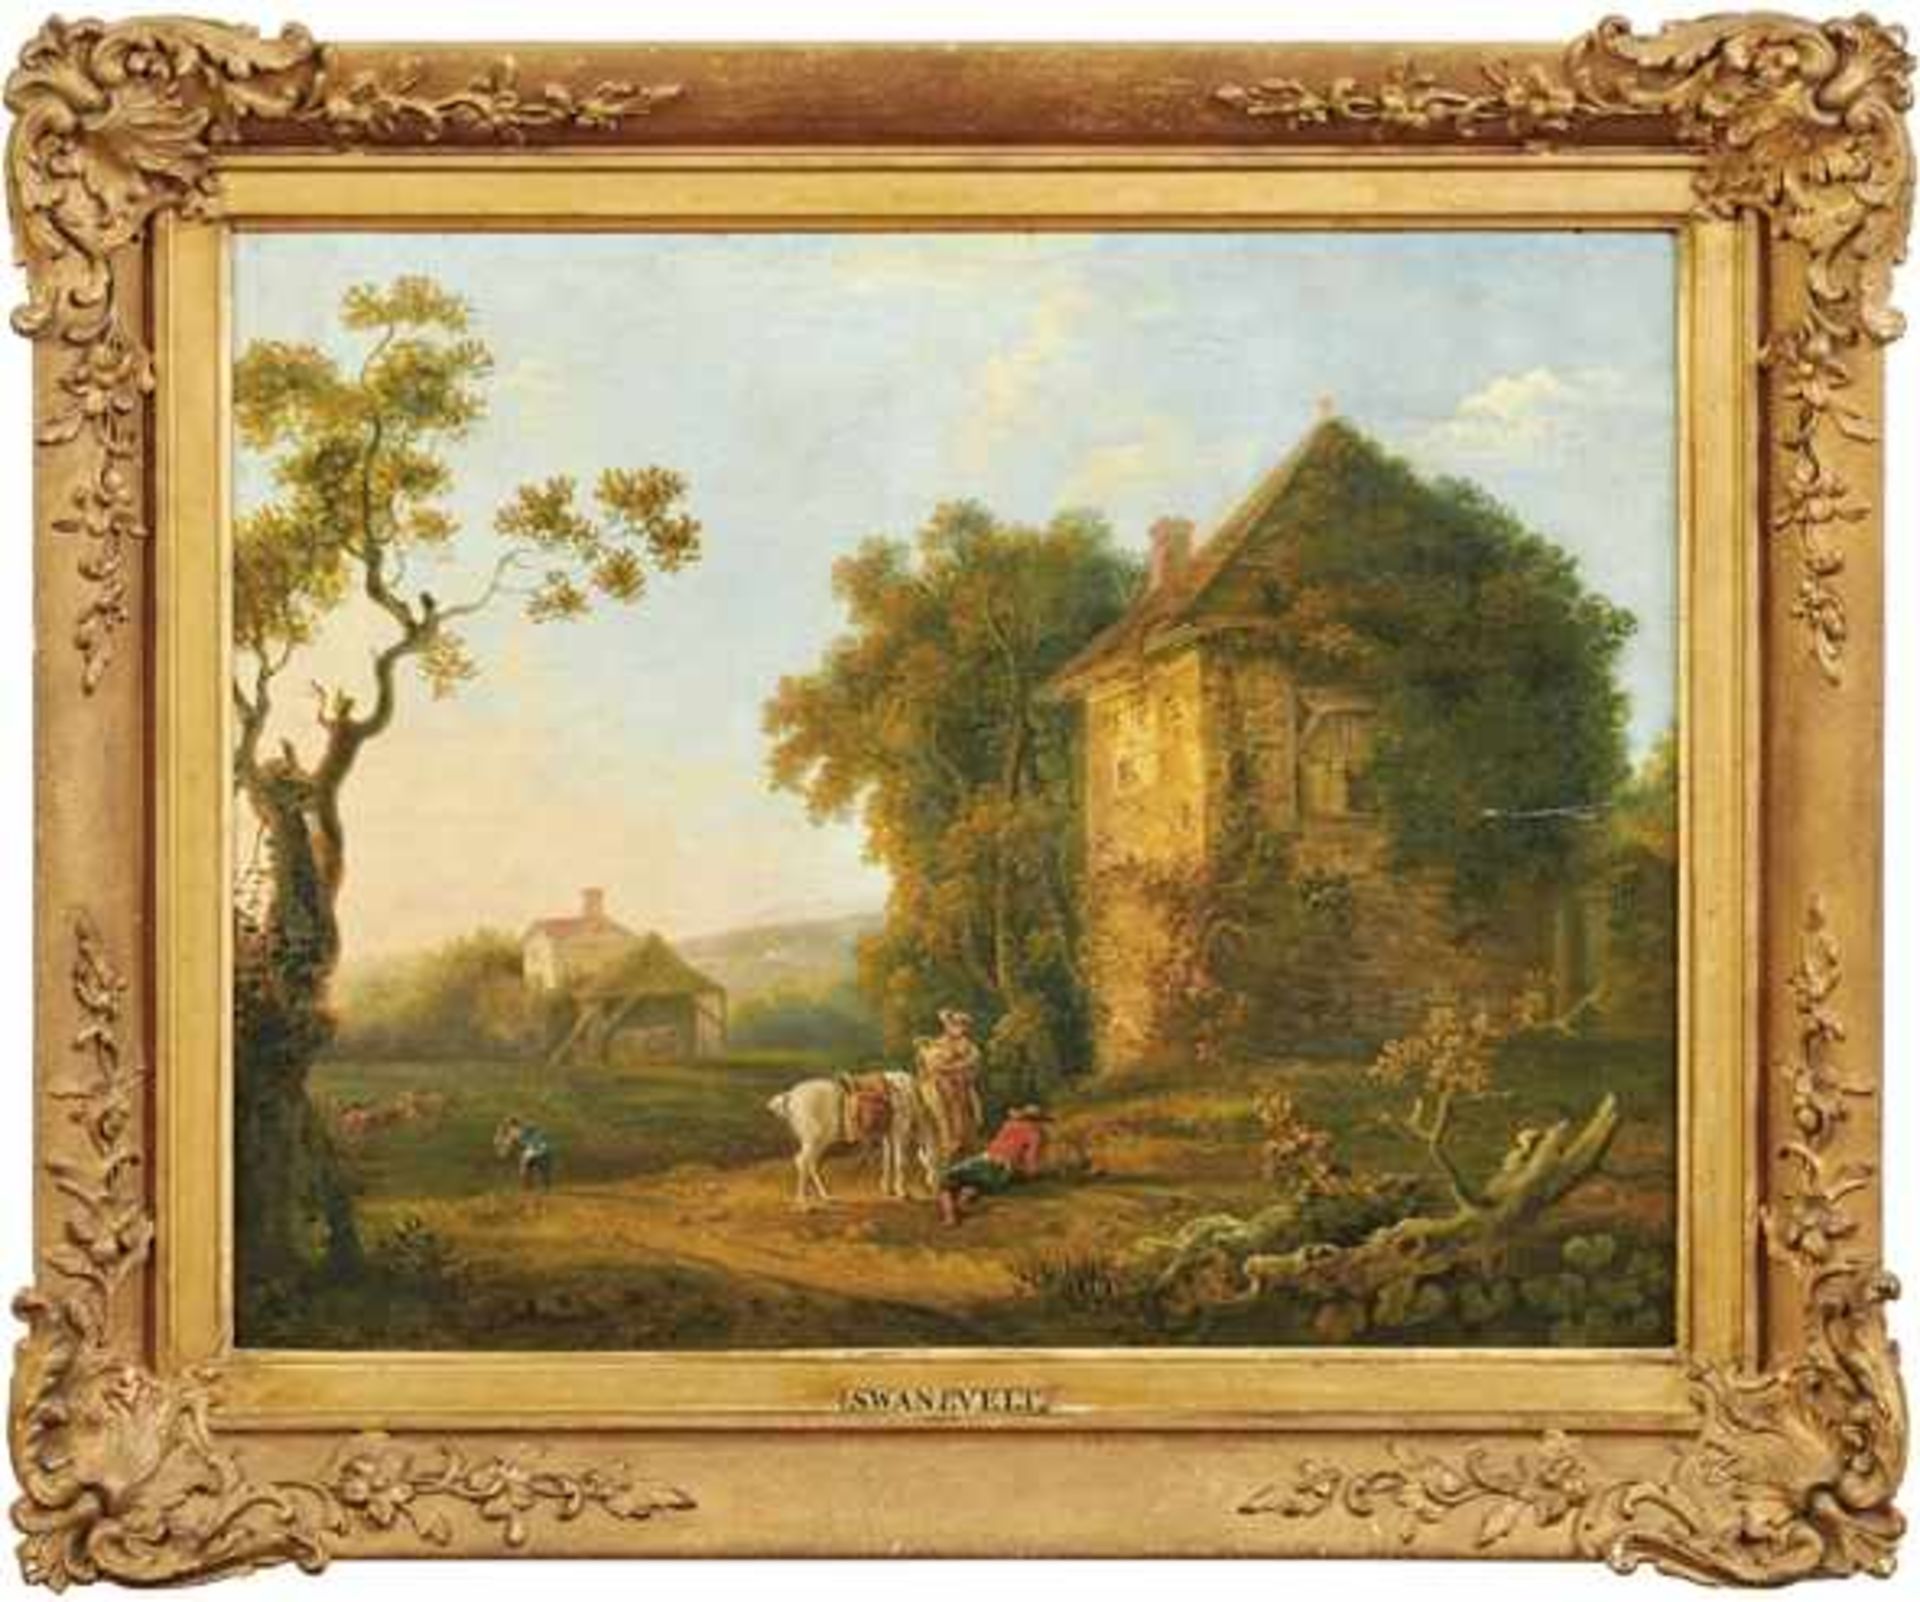 Frühromantiker um 1800 Landschaft mit Hirten und rastendem Reiter Öl/Lwd. 46 x 59 cm. - Kratzer